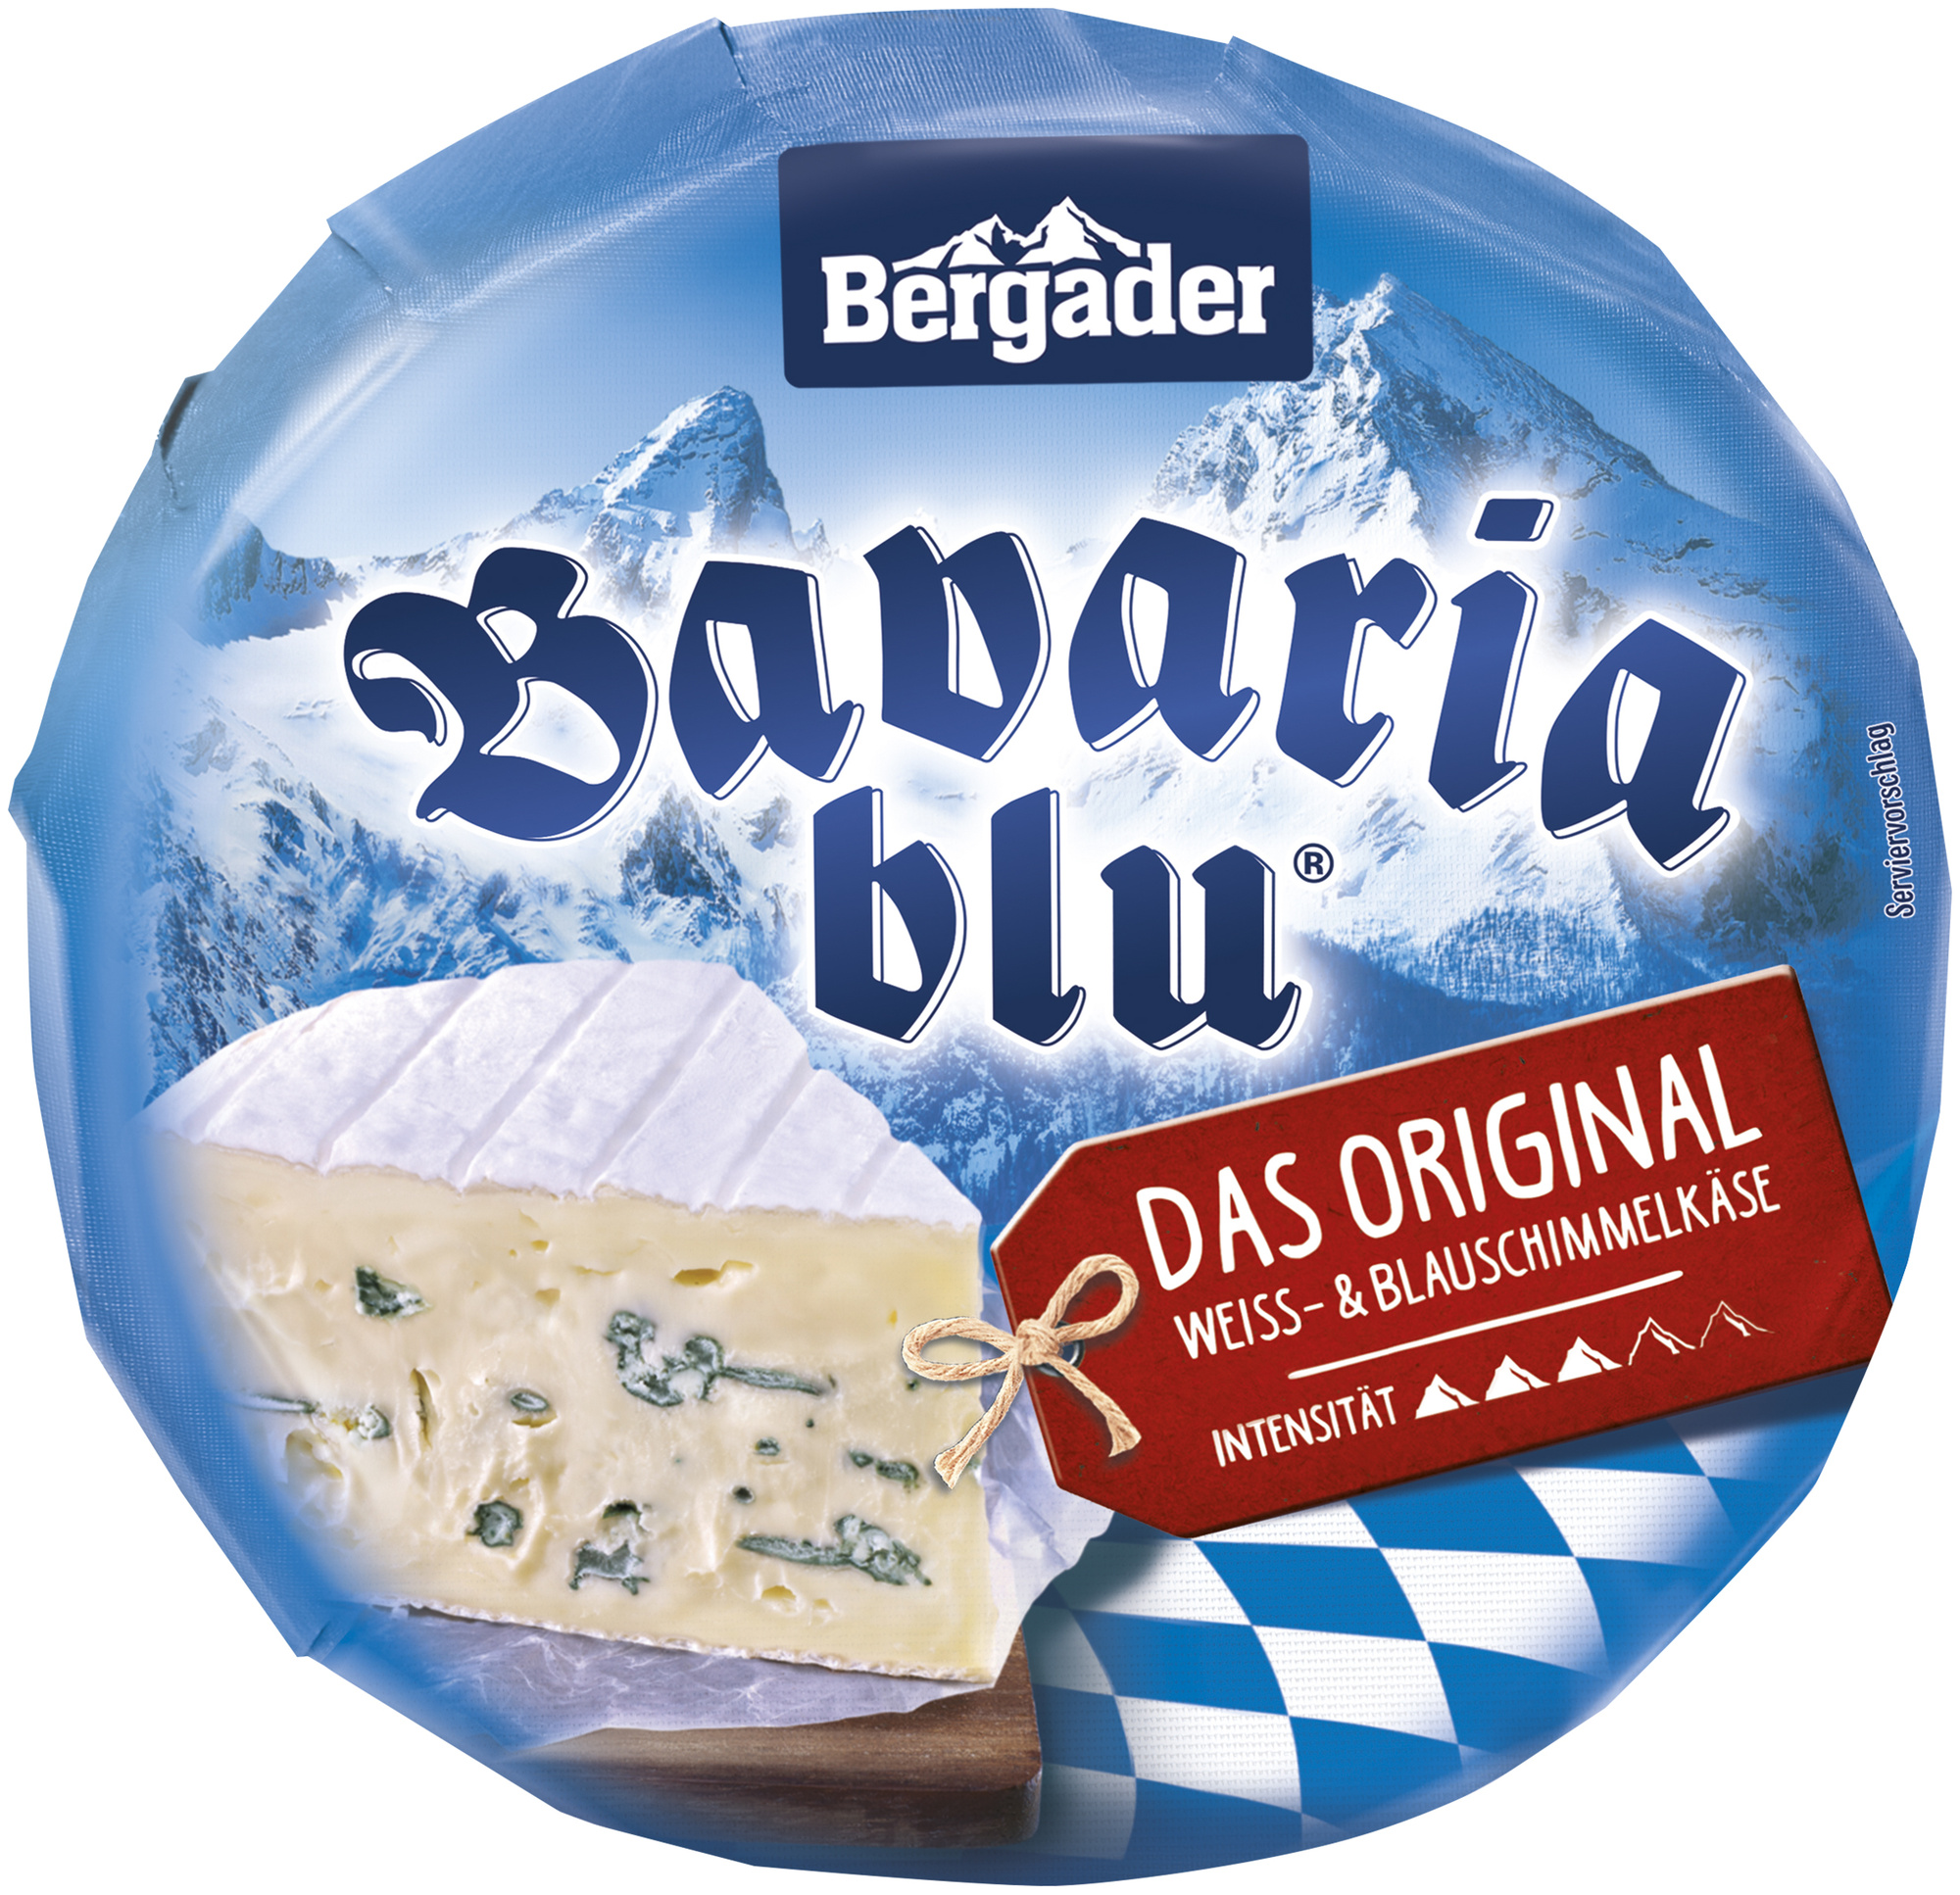 Bavaria blu Das Original ca. 1200g